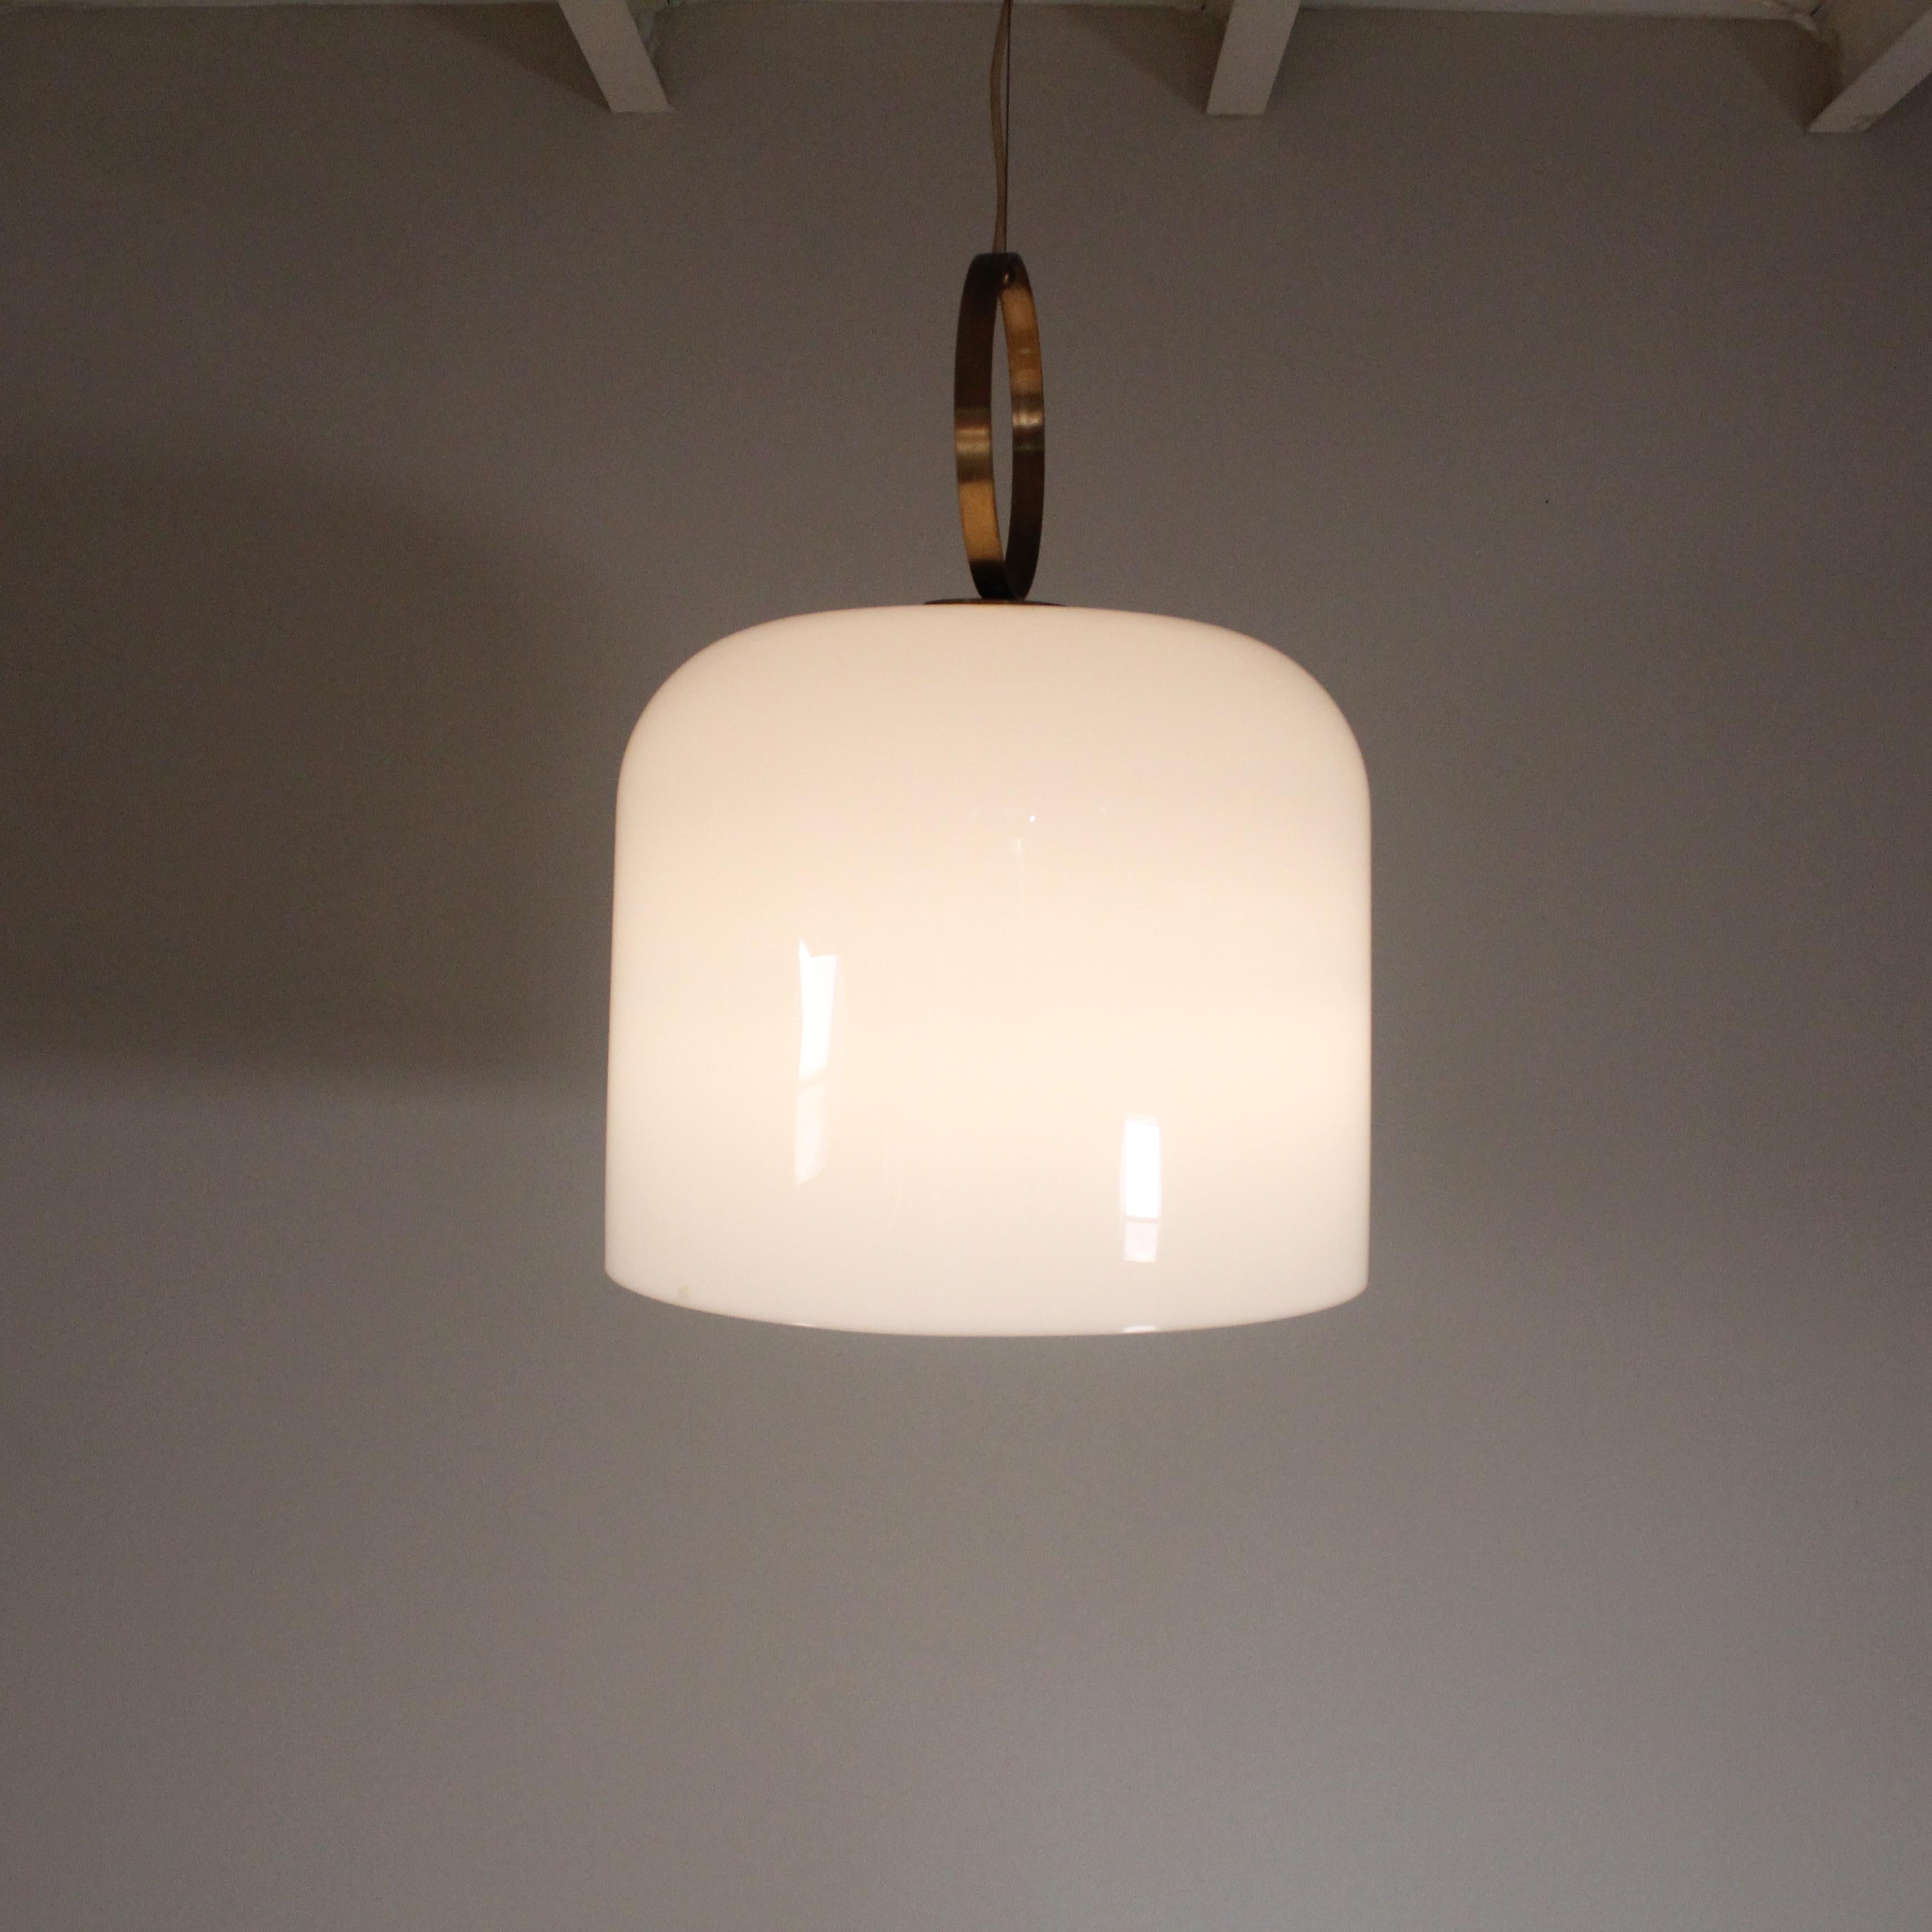 Exposition originale
Incroyable grande lampe suspendue 'Alvise' (Phare) conçue par Luigi Massoni et produite par Guzzini dans les années 1960/70.
Alvise possède un grand abat-jour en acrylique blanc avec un diffuseur conique à l'intérieur. Les